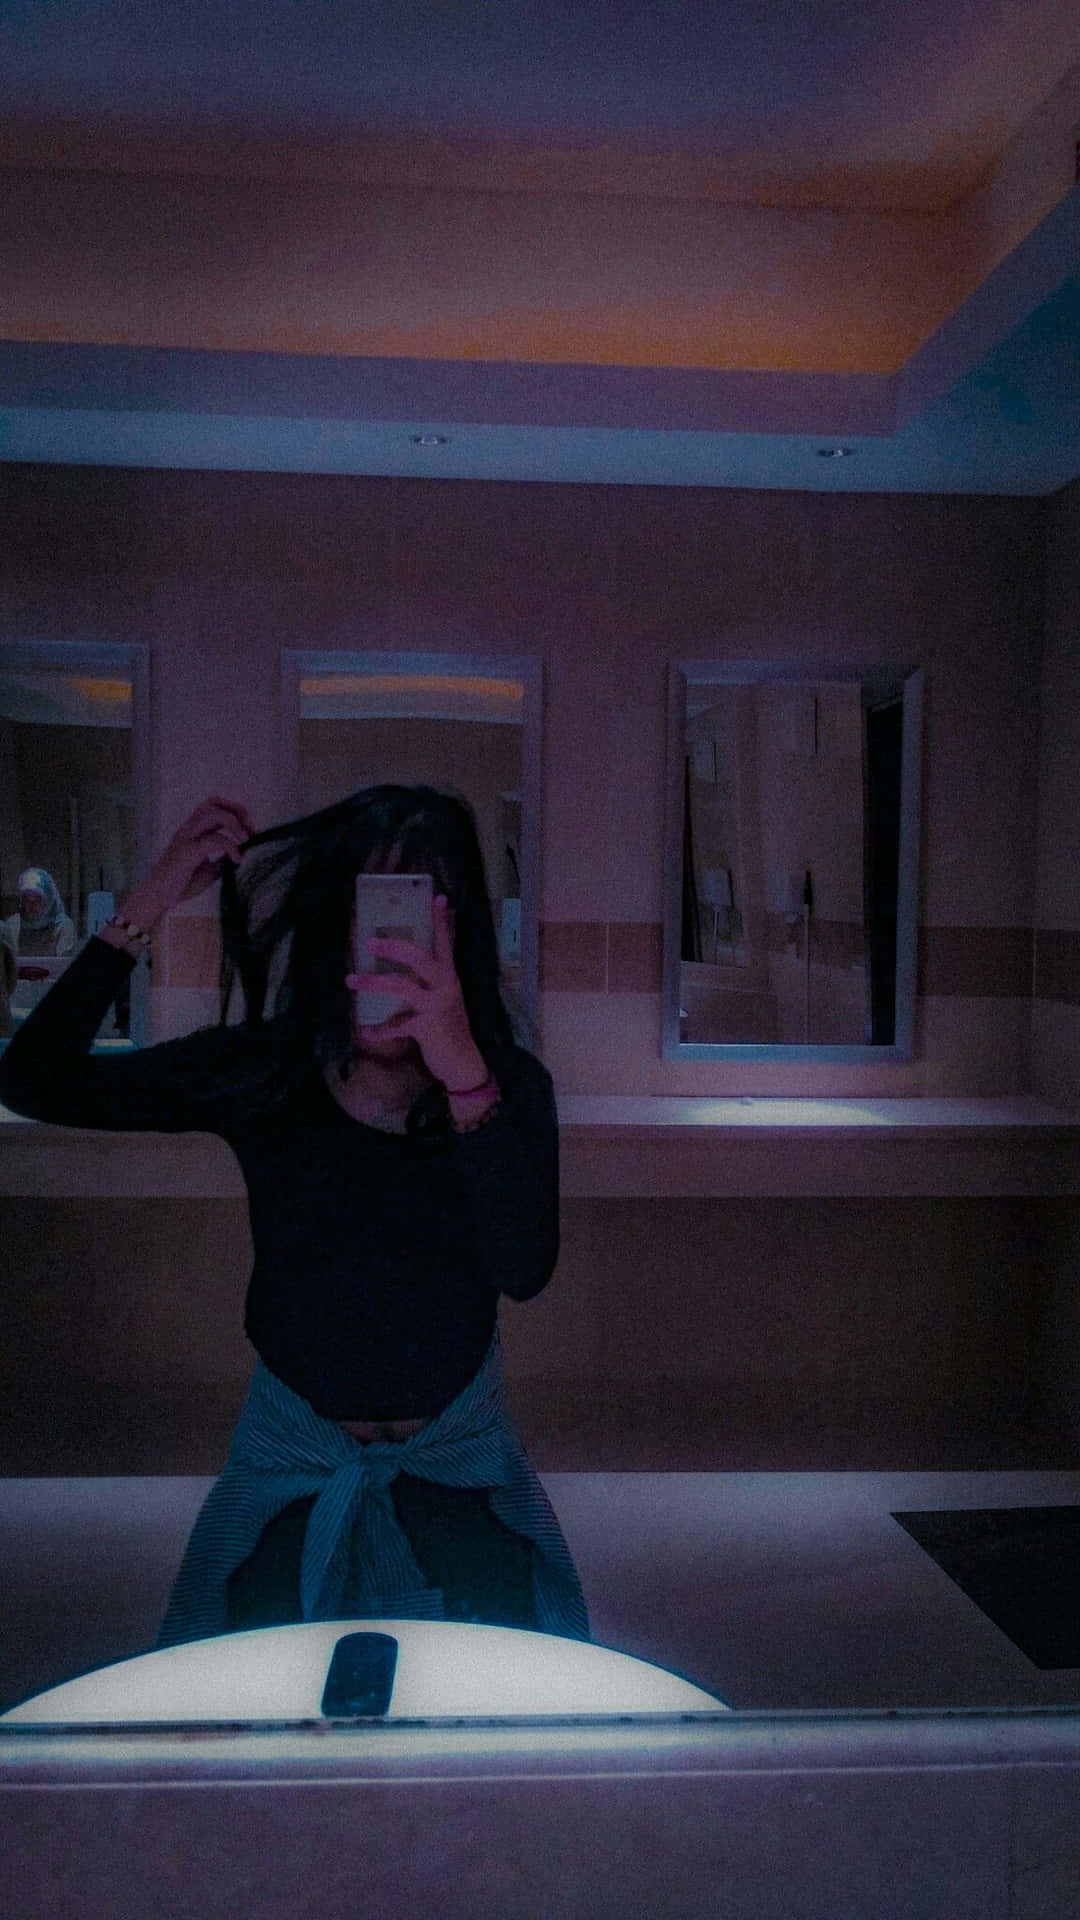 A Woman Is Taking A Selfie In A Bathroom Mirror